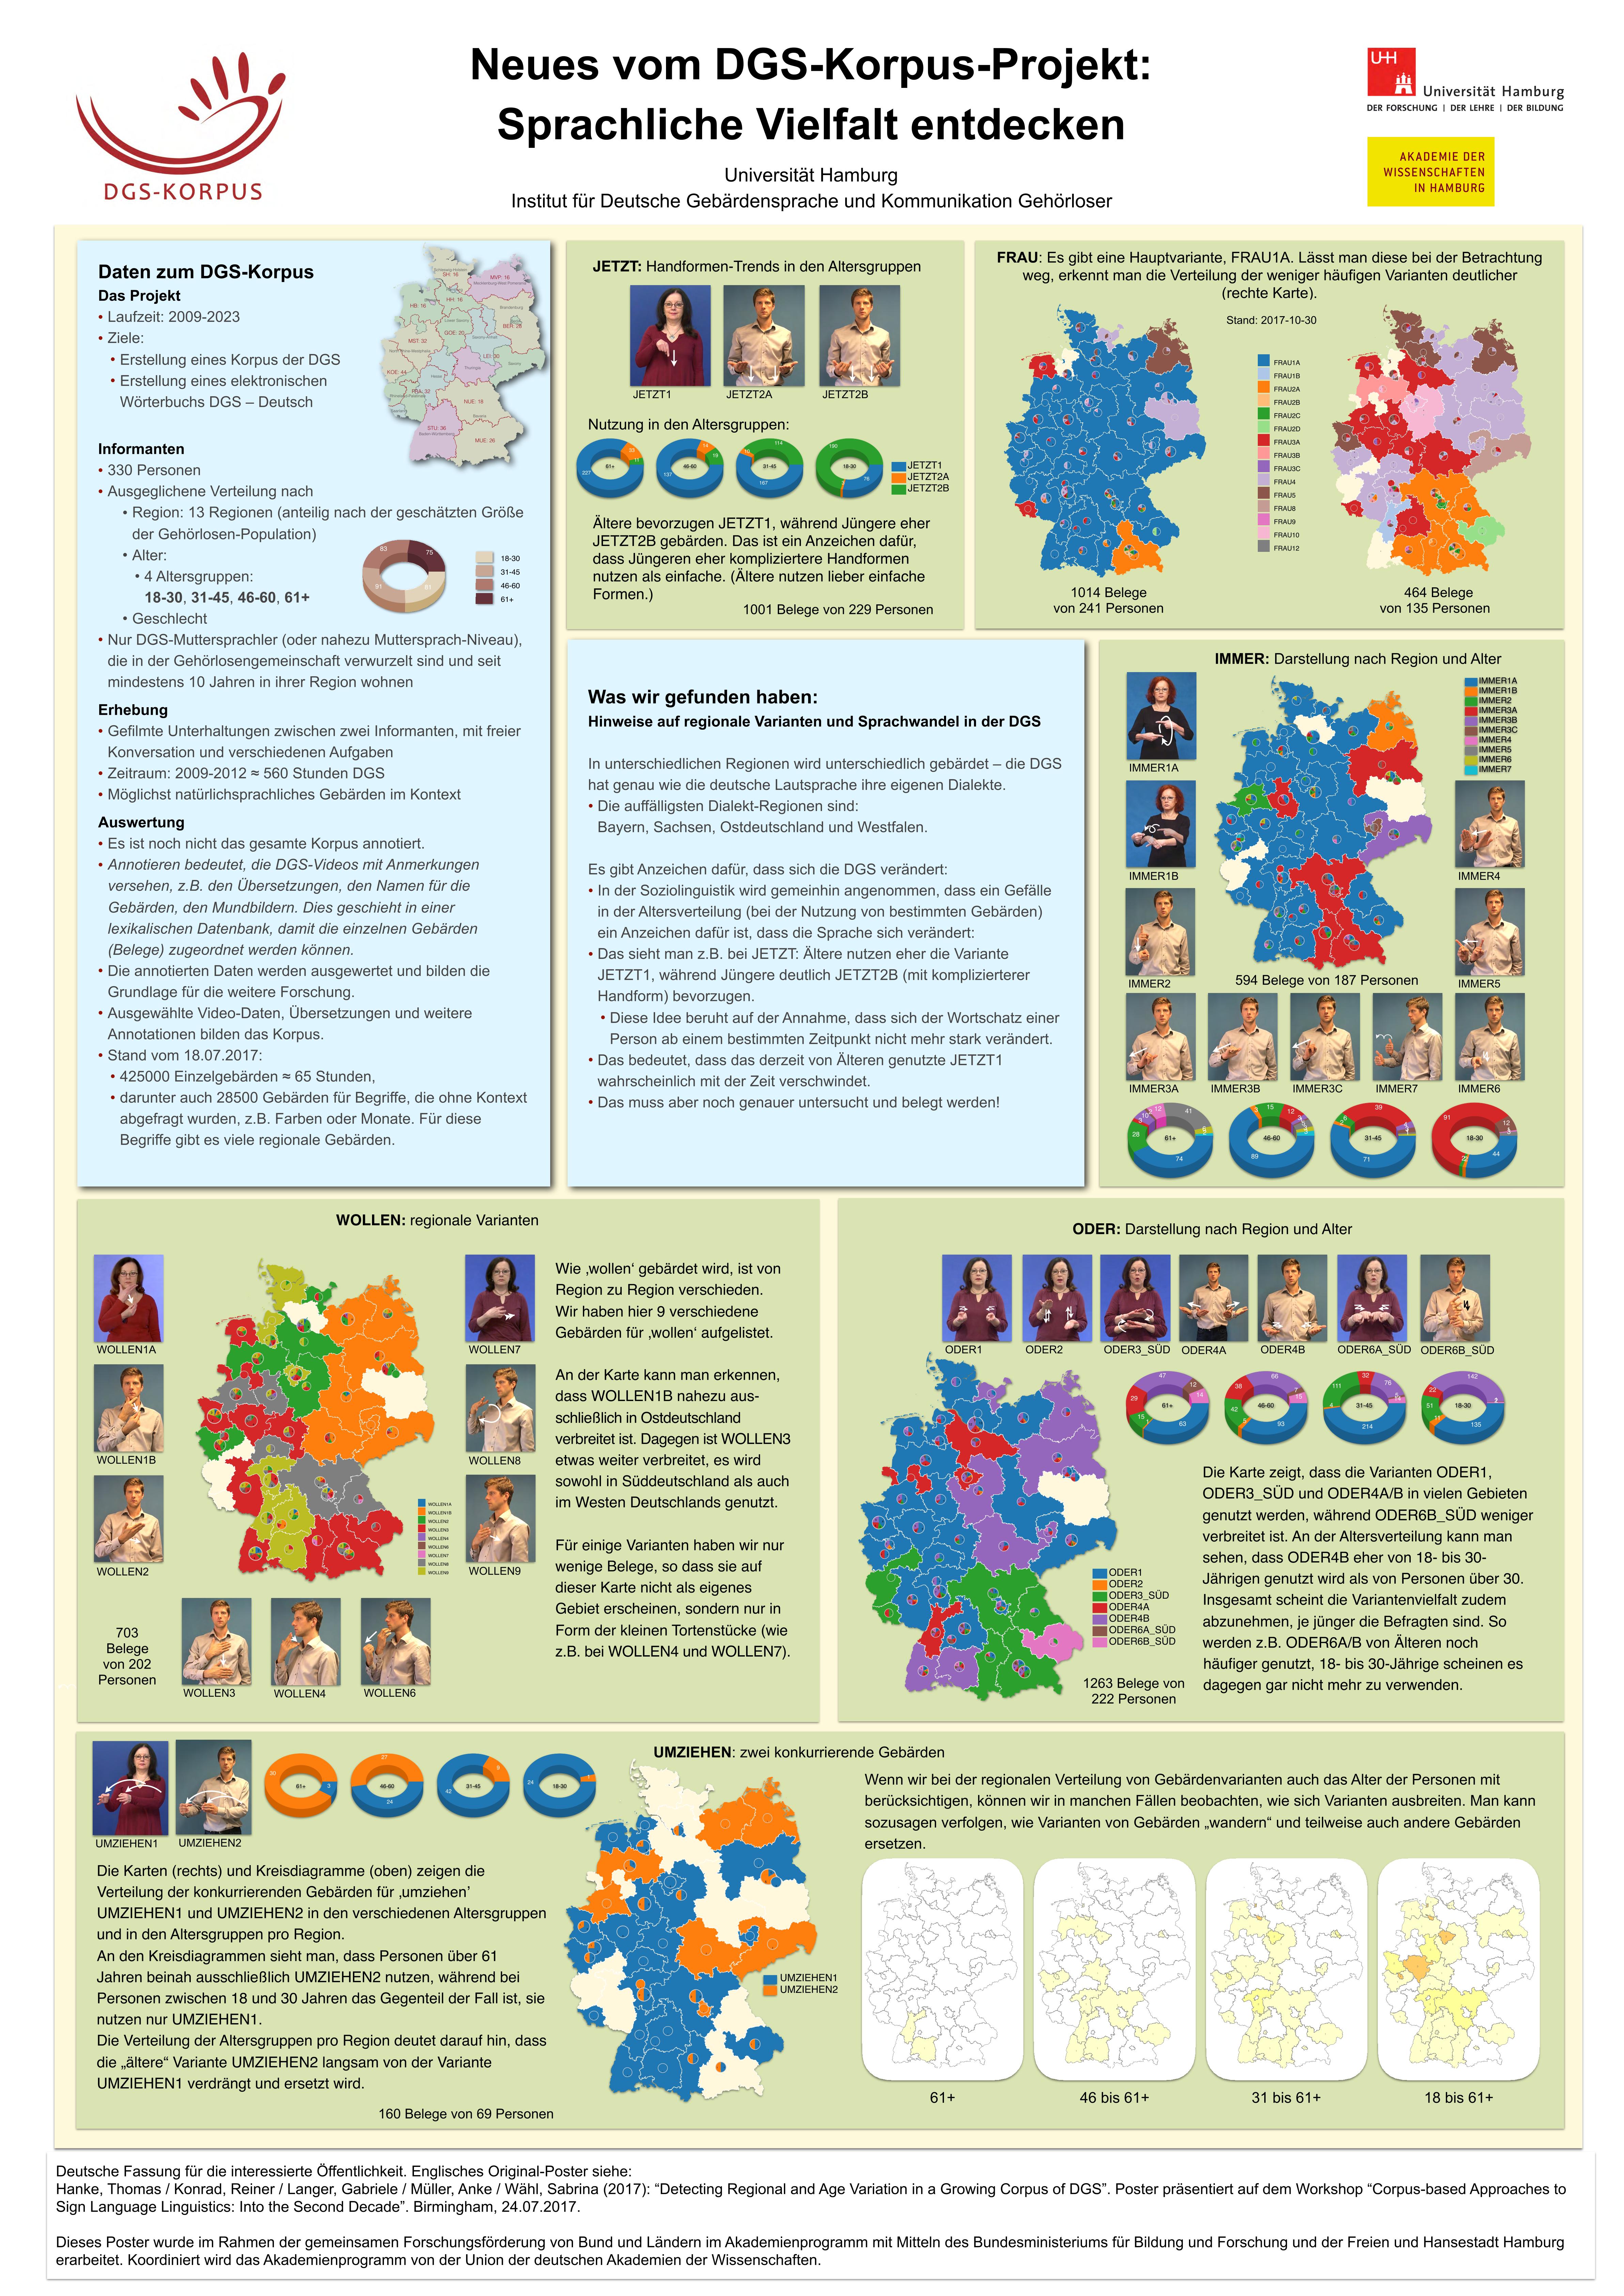 Sprachliche Vielfalt:
Regionale Varianten und Sprachwandel in der DGS